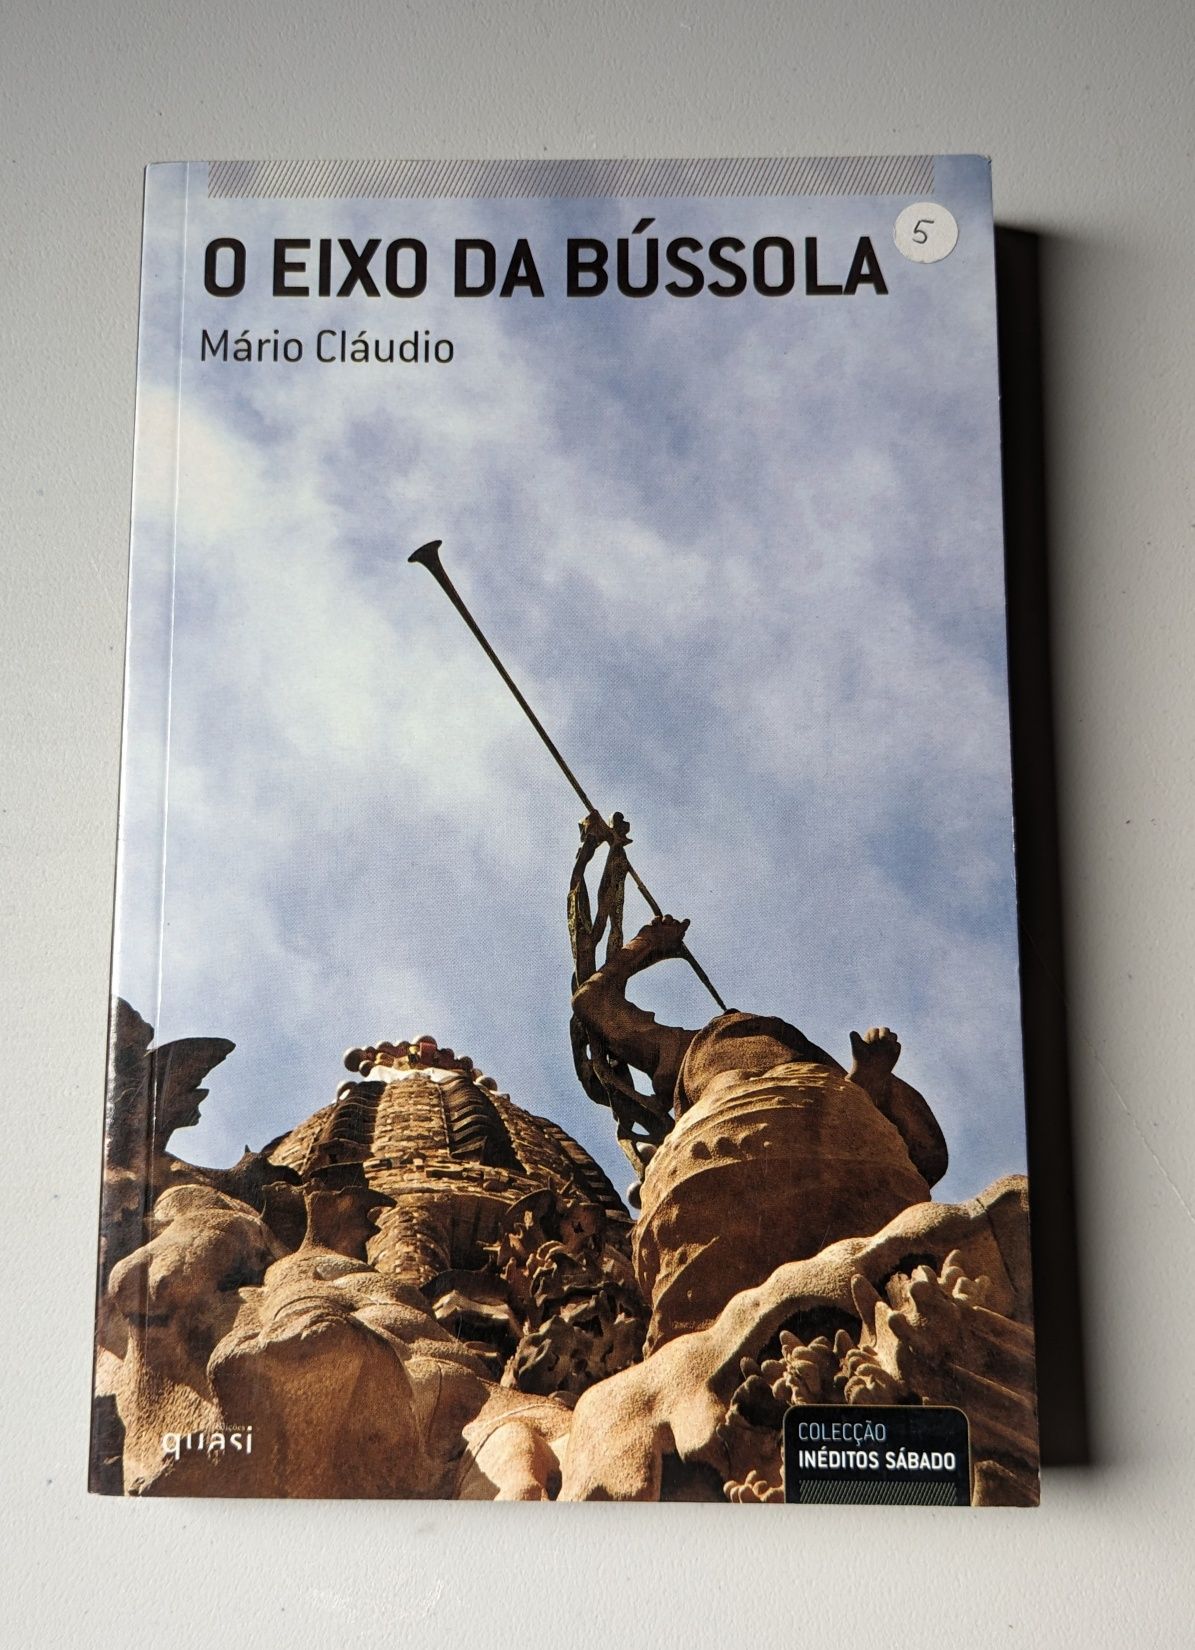 Autores Portugueses. Edições Quasi.